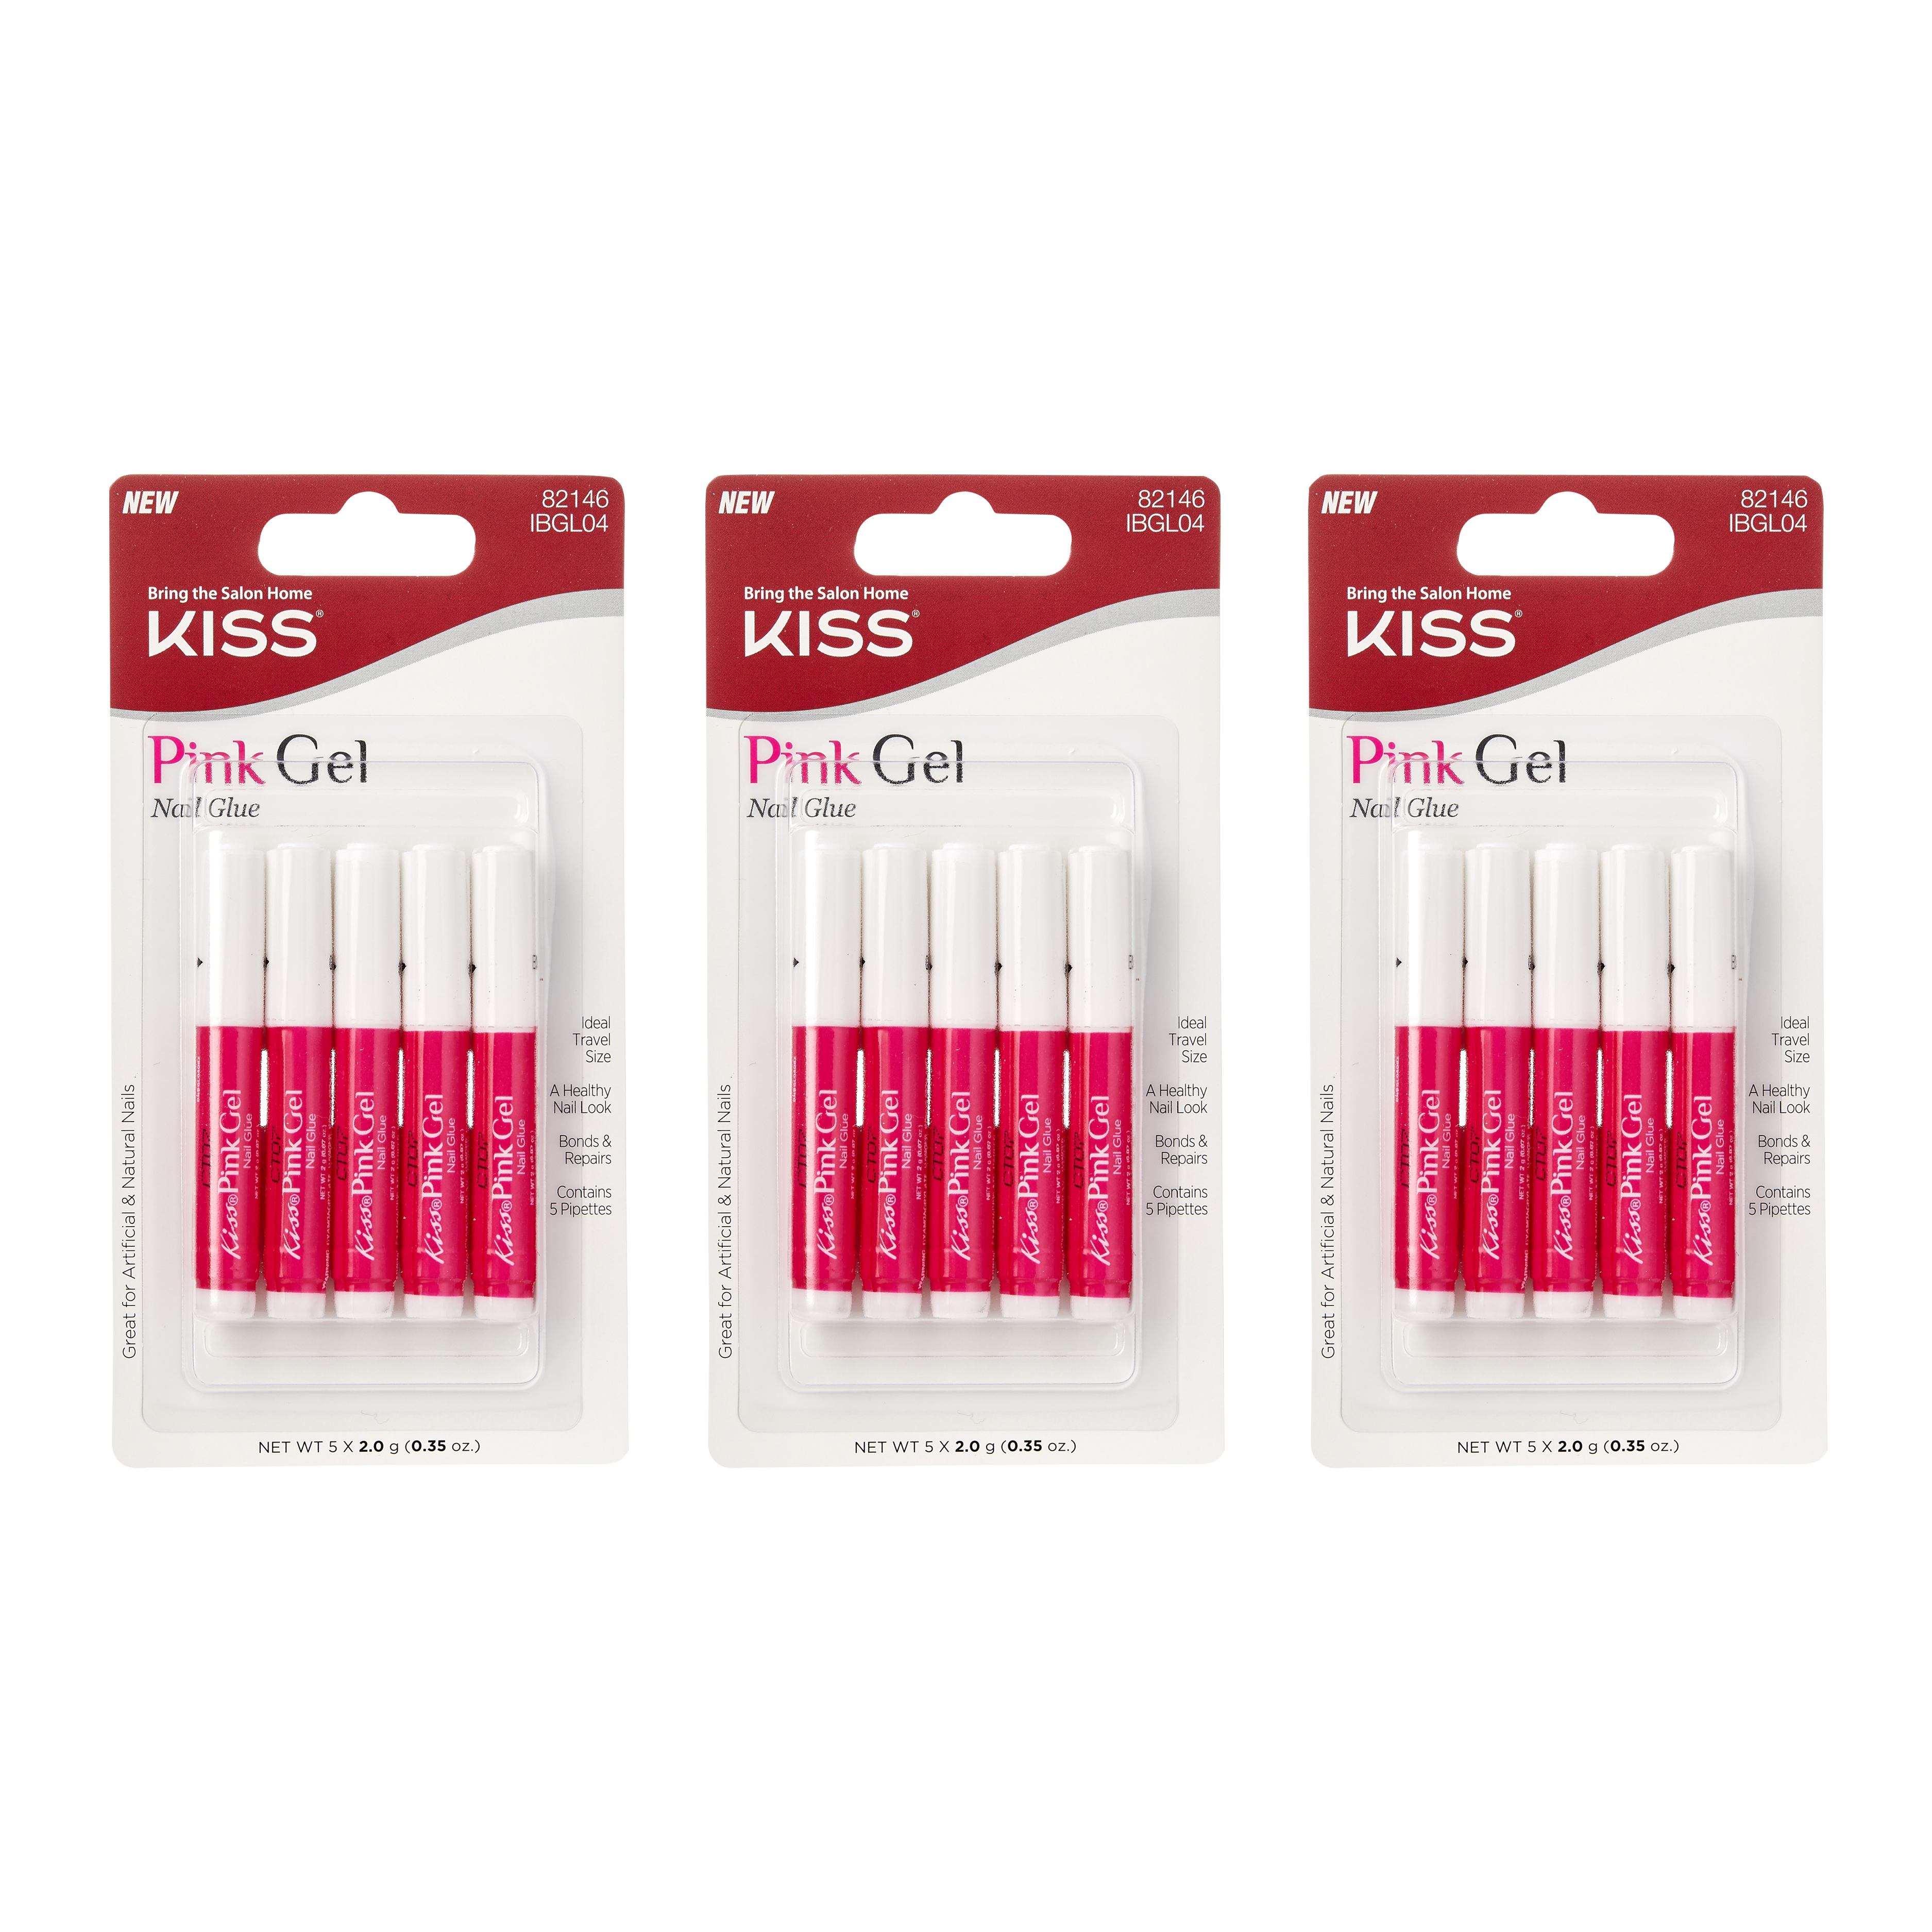 KISS Pink Gel Nail Glue - 5-Pack Bundle